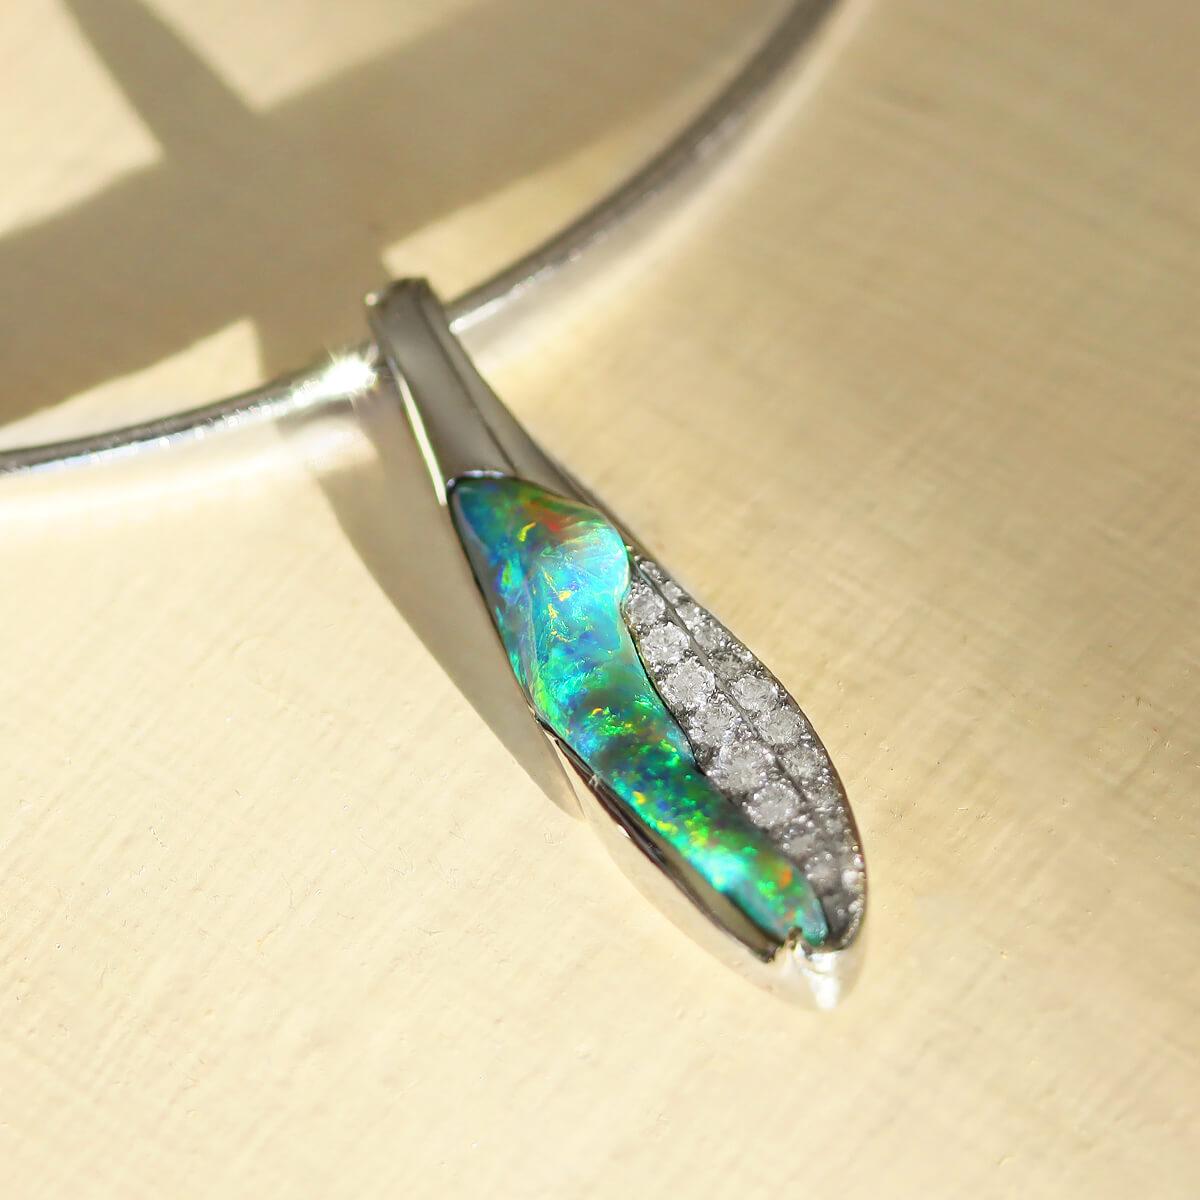 Wenn Sie auf der Suche nach etwas Einzigartigem und Schönem sind, sind Sie hier genau richtig. Mit fast einem Karat strahlend weißer Diamanten und dem wunderschönen blaugrünen schwarzen Opal ist dieser Anhänger einfach atemberaubend. Stellen Sie